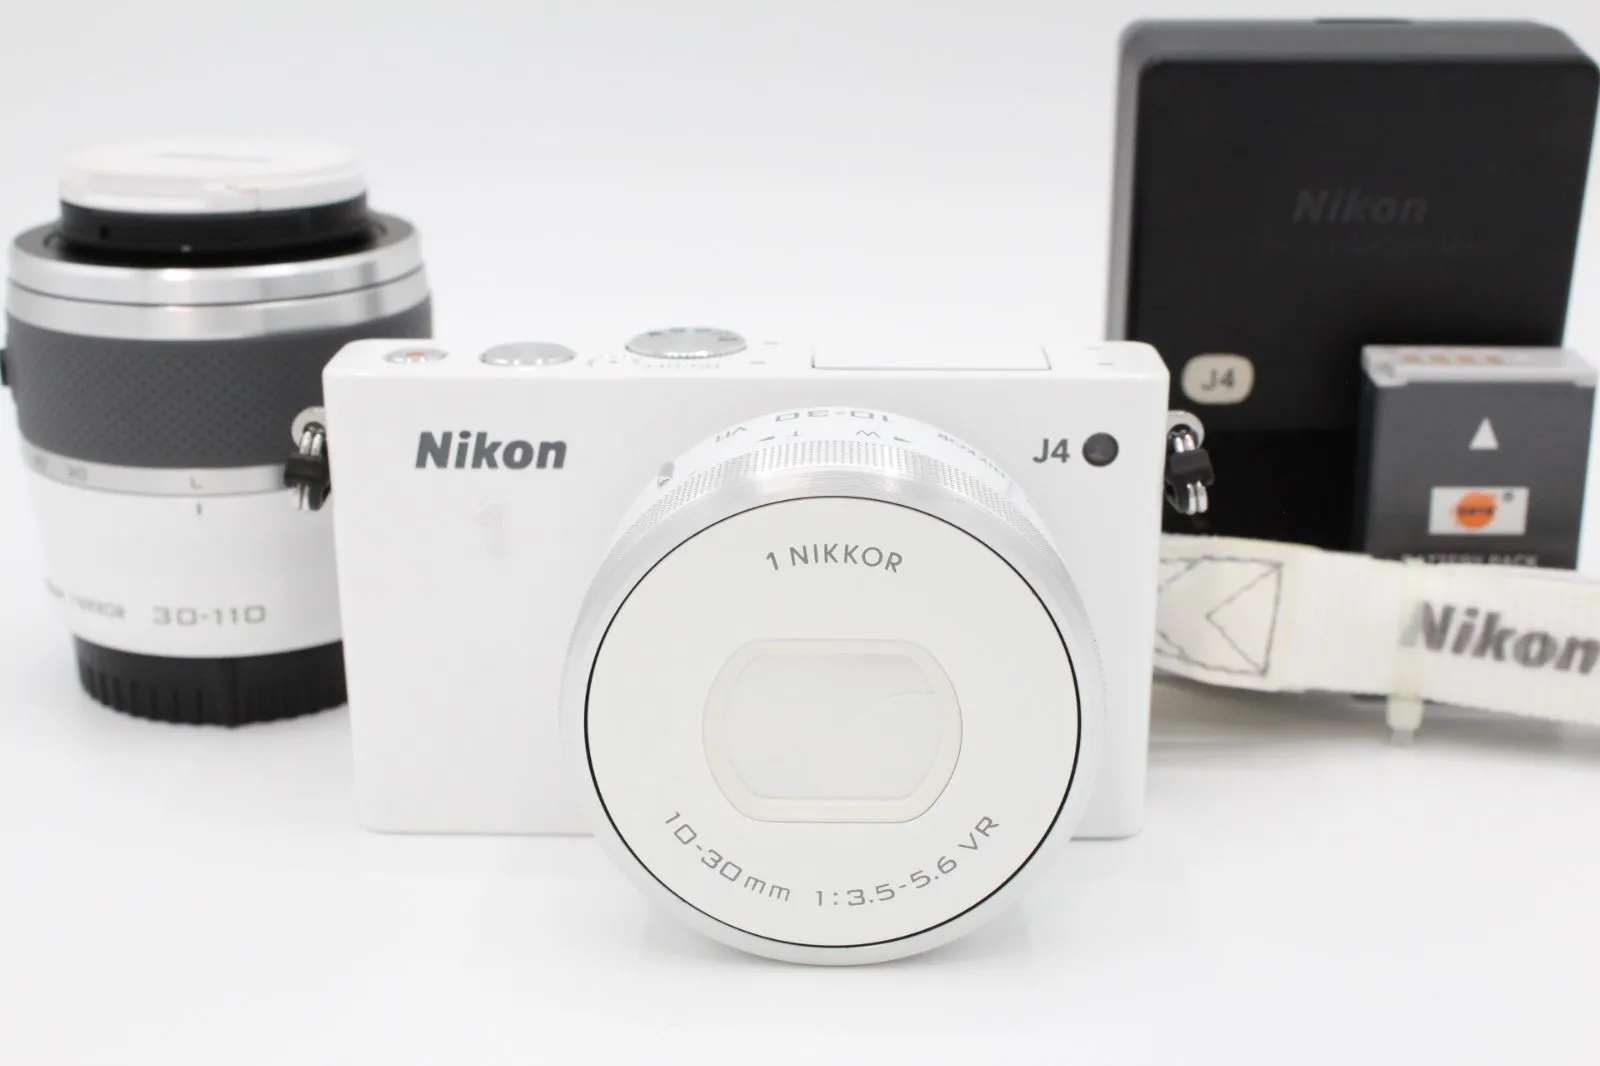 デジタルカメラ Nikon 1 J4 ダブルズームキット [シルバー]カメラ 